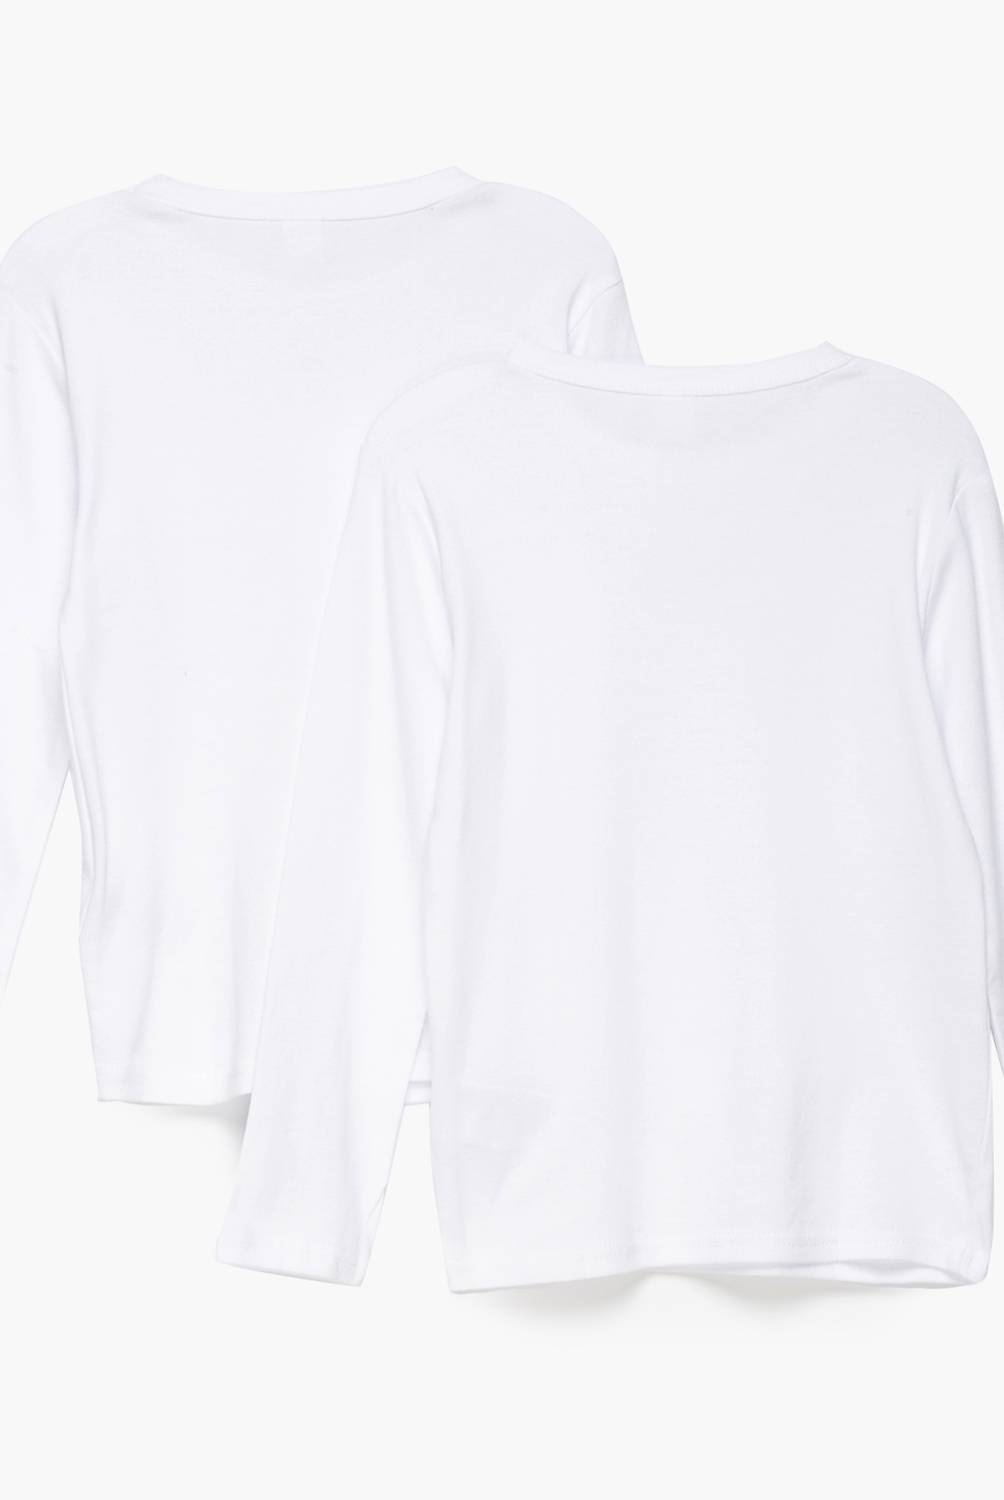 YAMP - Camiseta Pack De 2 Unidades Algodón Niña